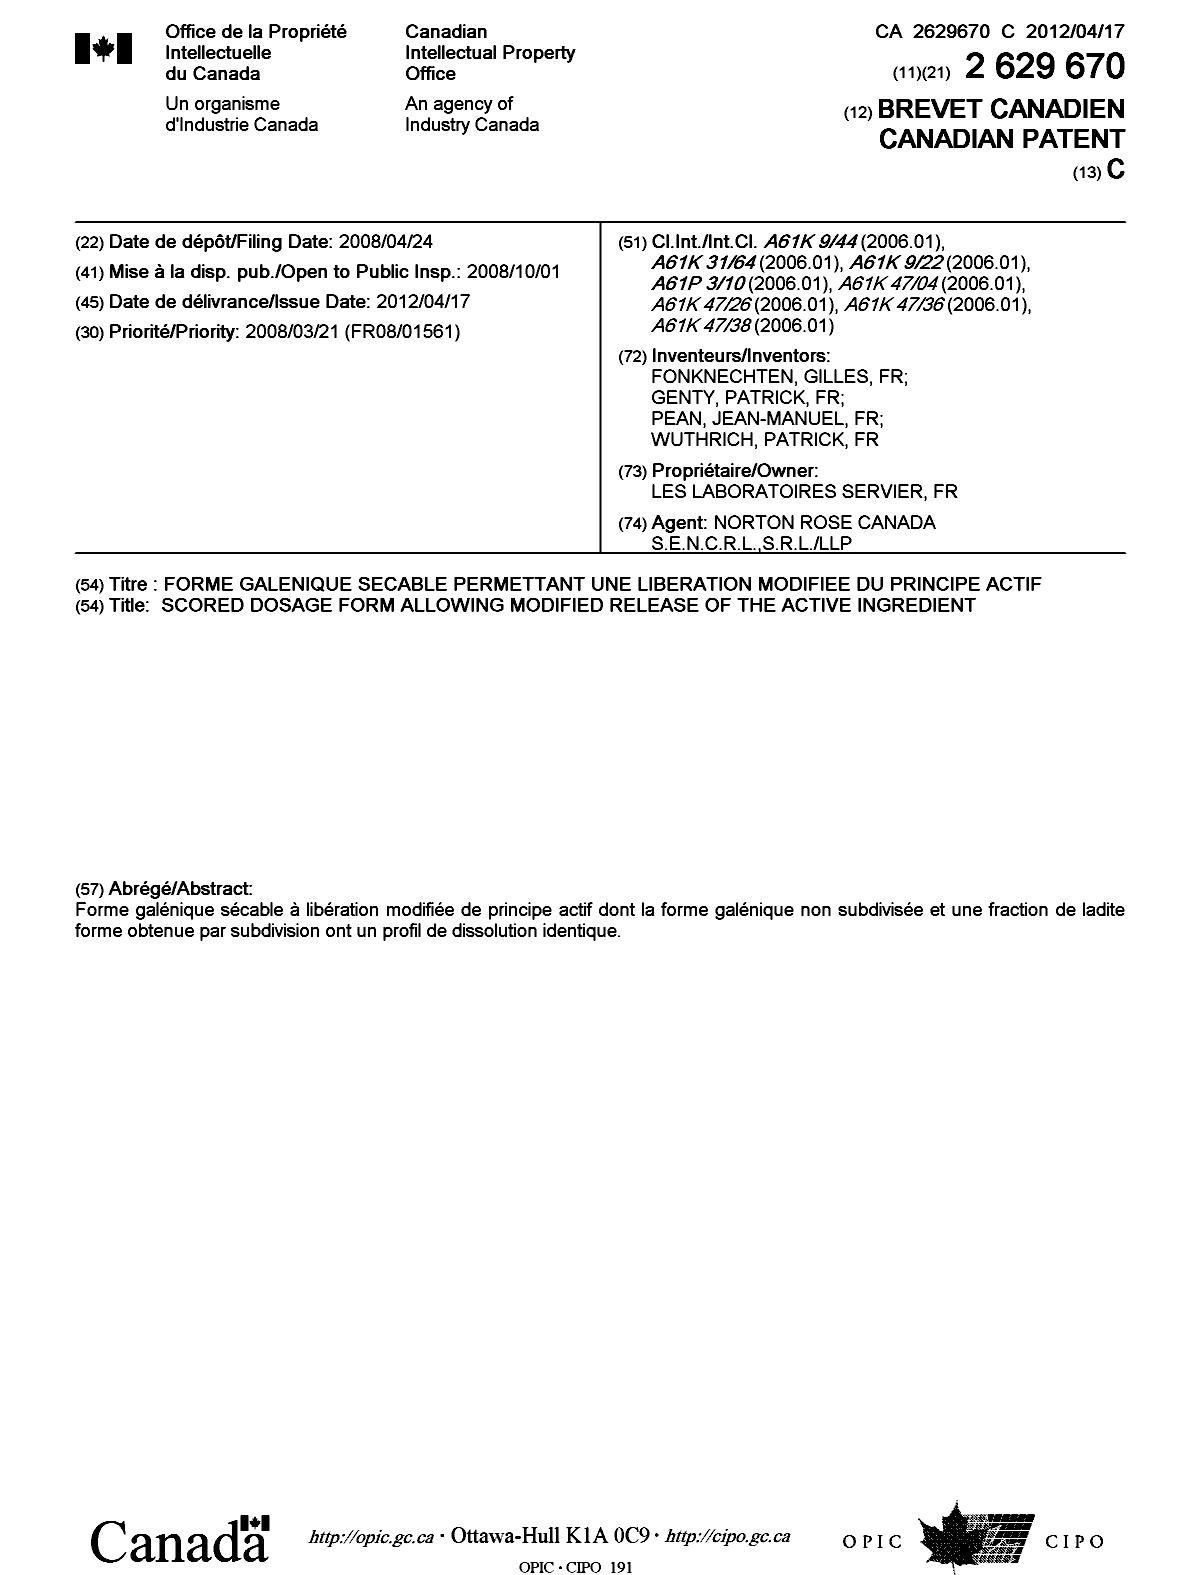 Document de brevet canadien 2629670. Page couverture 20120321. Image 1 de 1